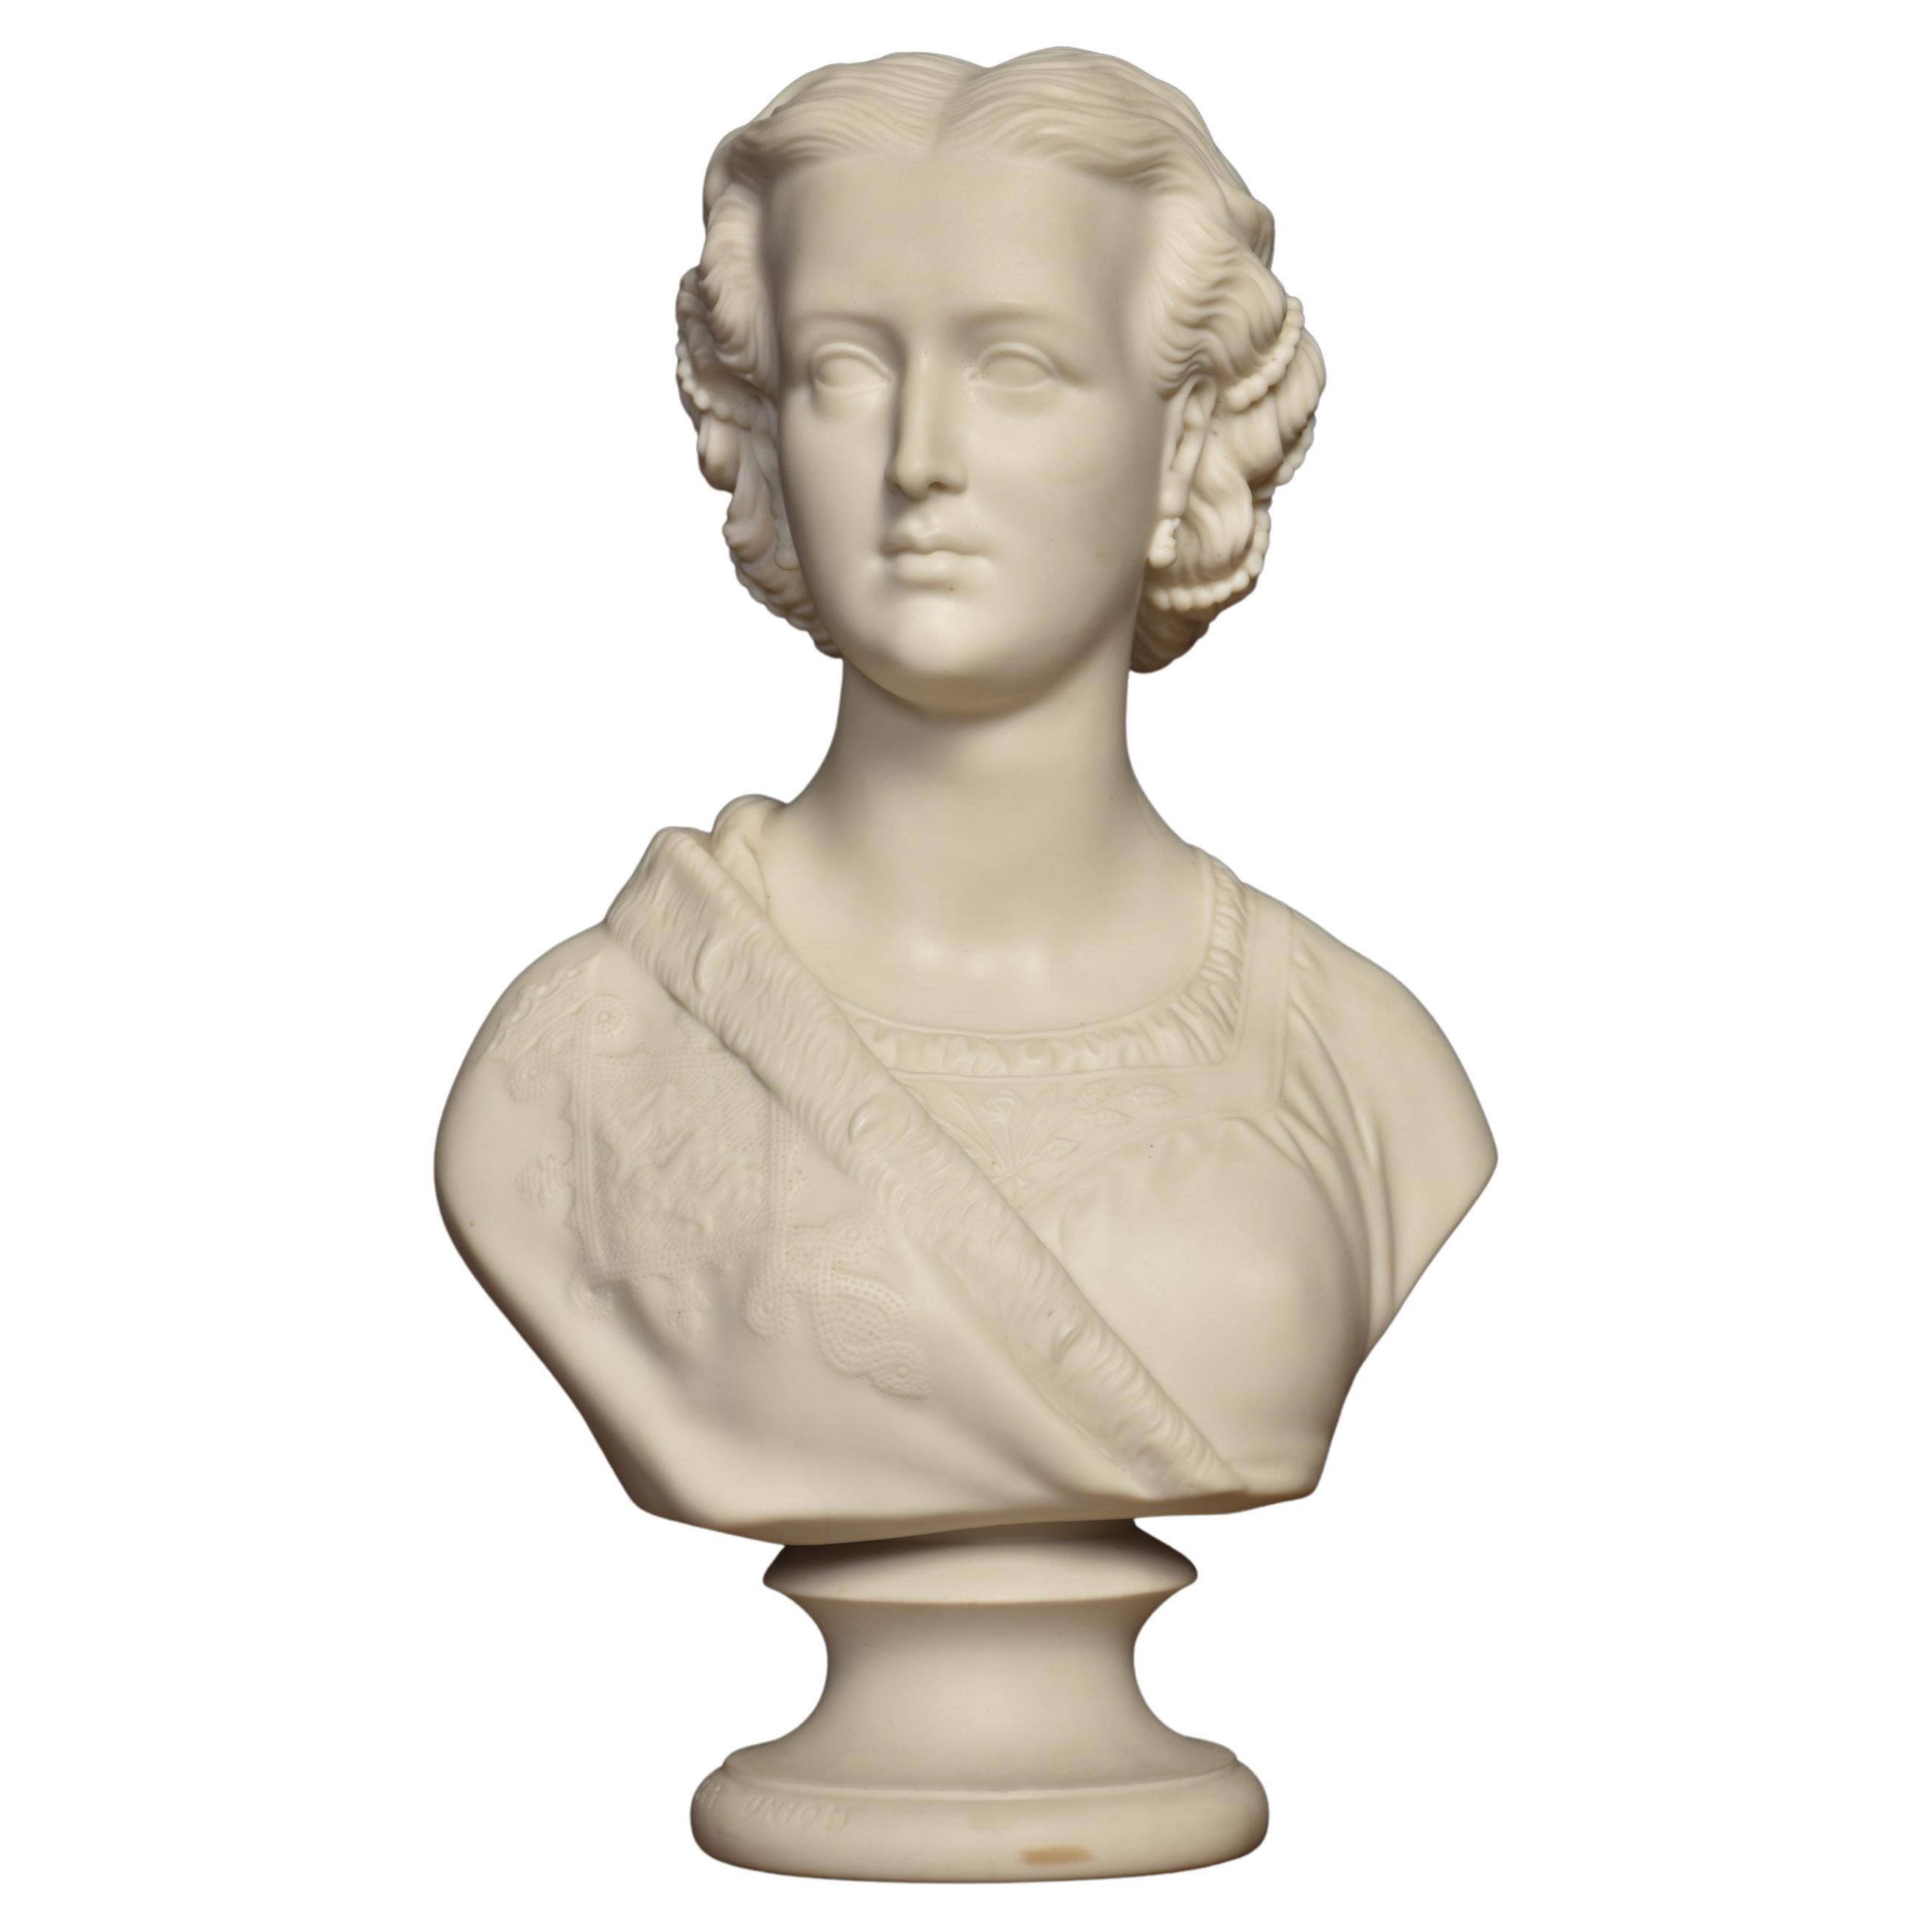 Buste Diana-Büste von Parianware von Copeland